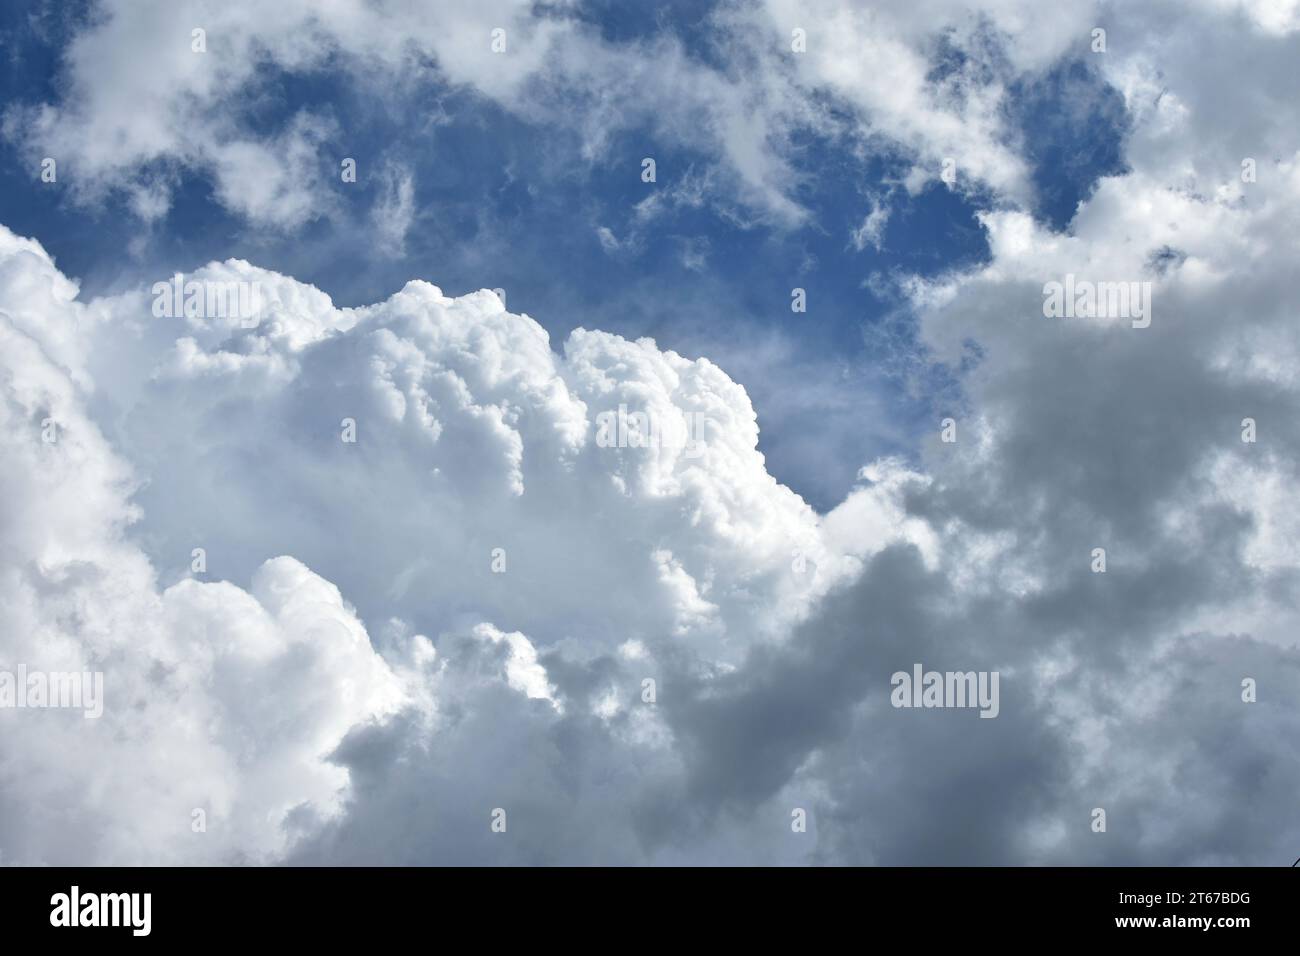 Cumulus nuages dans un ciel bleu comme symbole de paix, sérénité, infini, ciel, spiritualité et Dieu. Banque D'Images